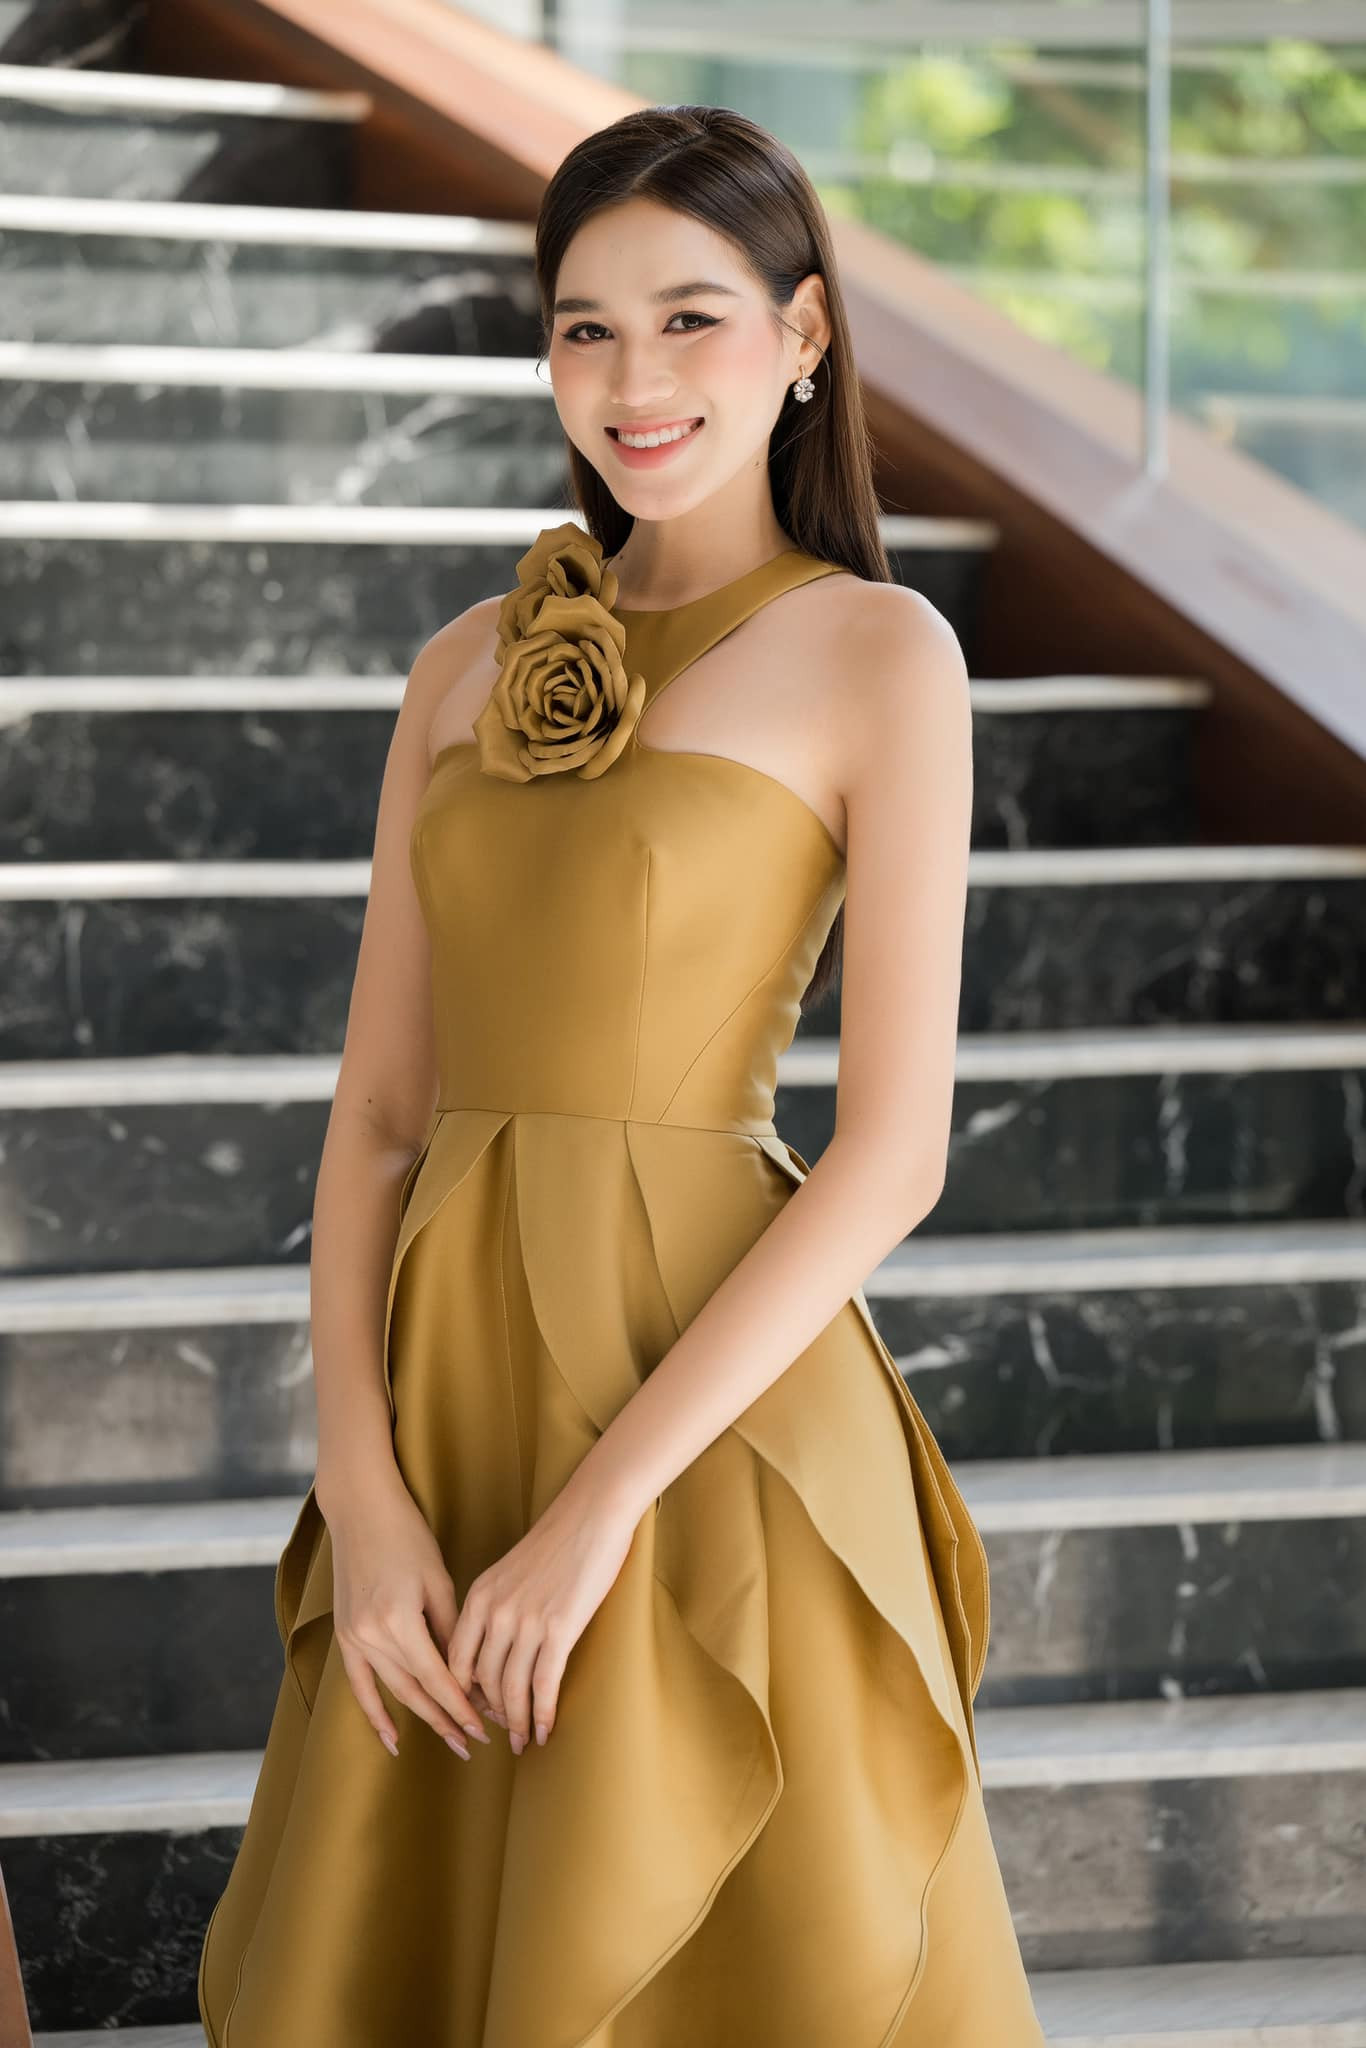 Hoa hậu Đỗ Thị Hà: Nhiều cú sốc đến với tôi và gia đình - Ảnh 10.